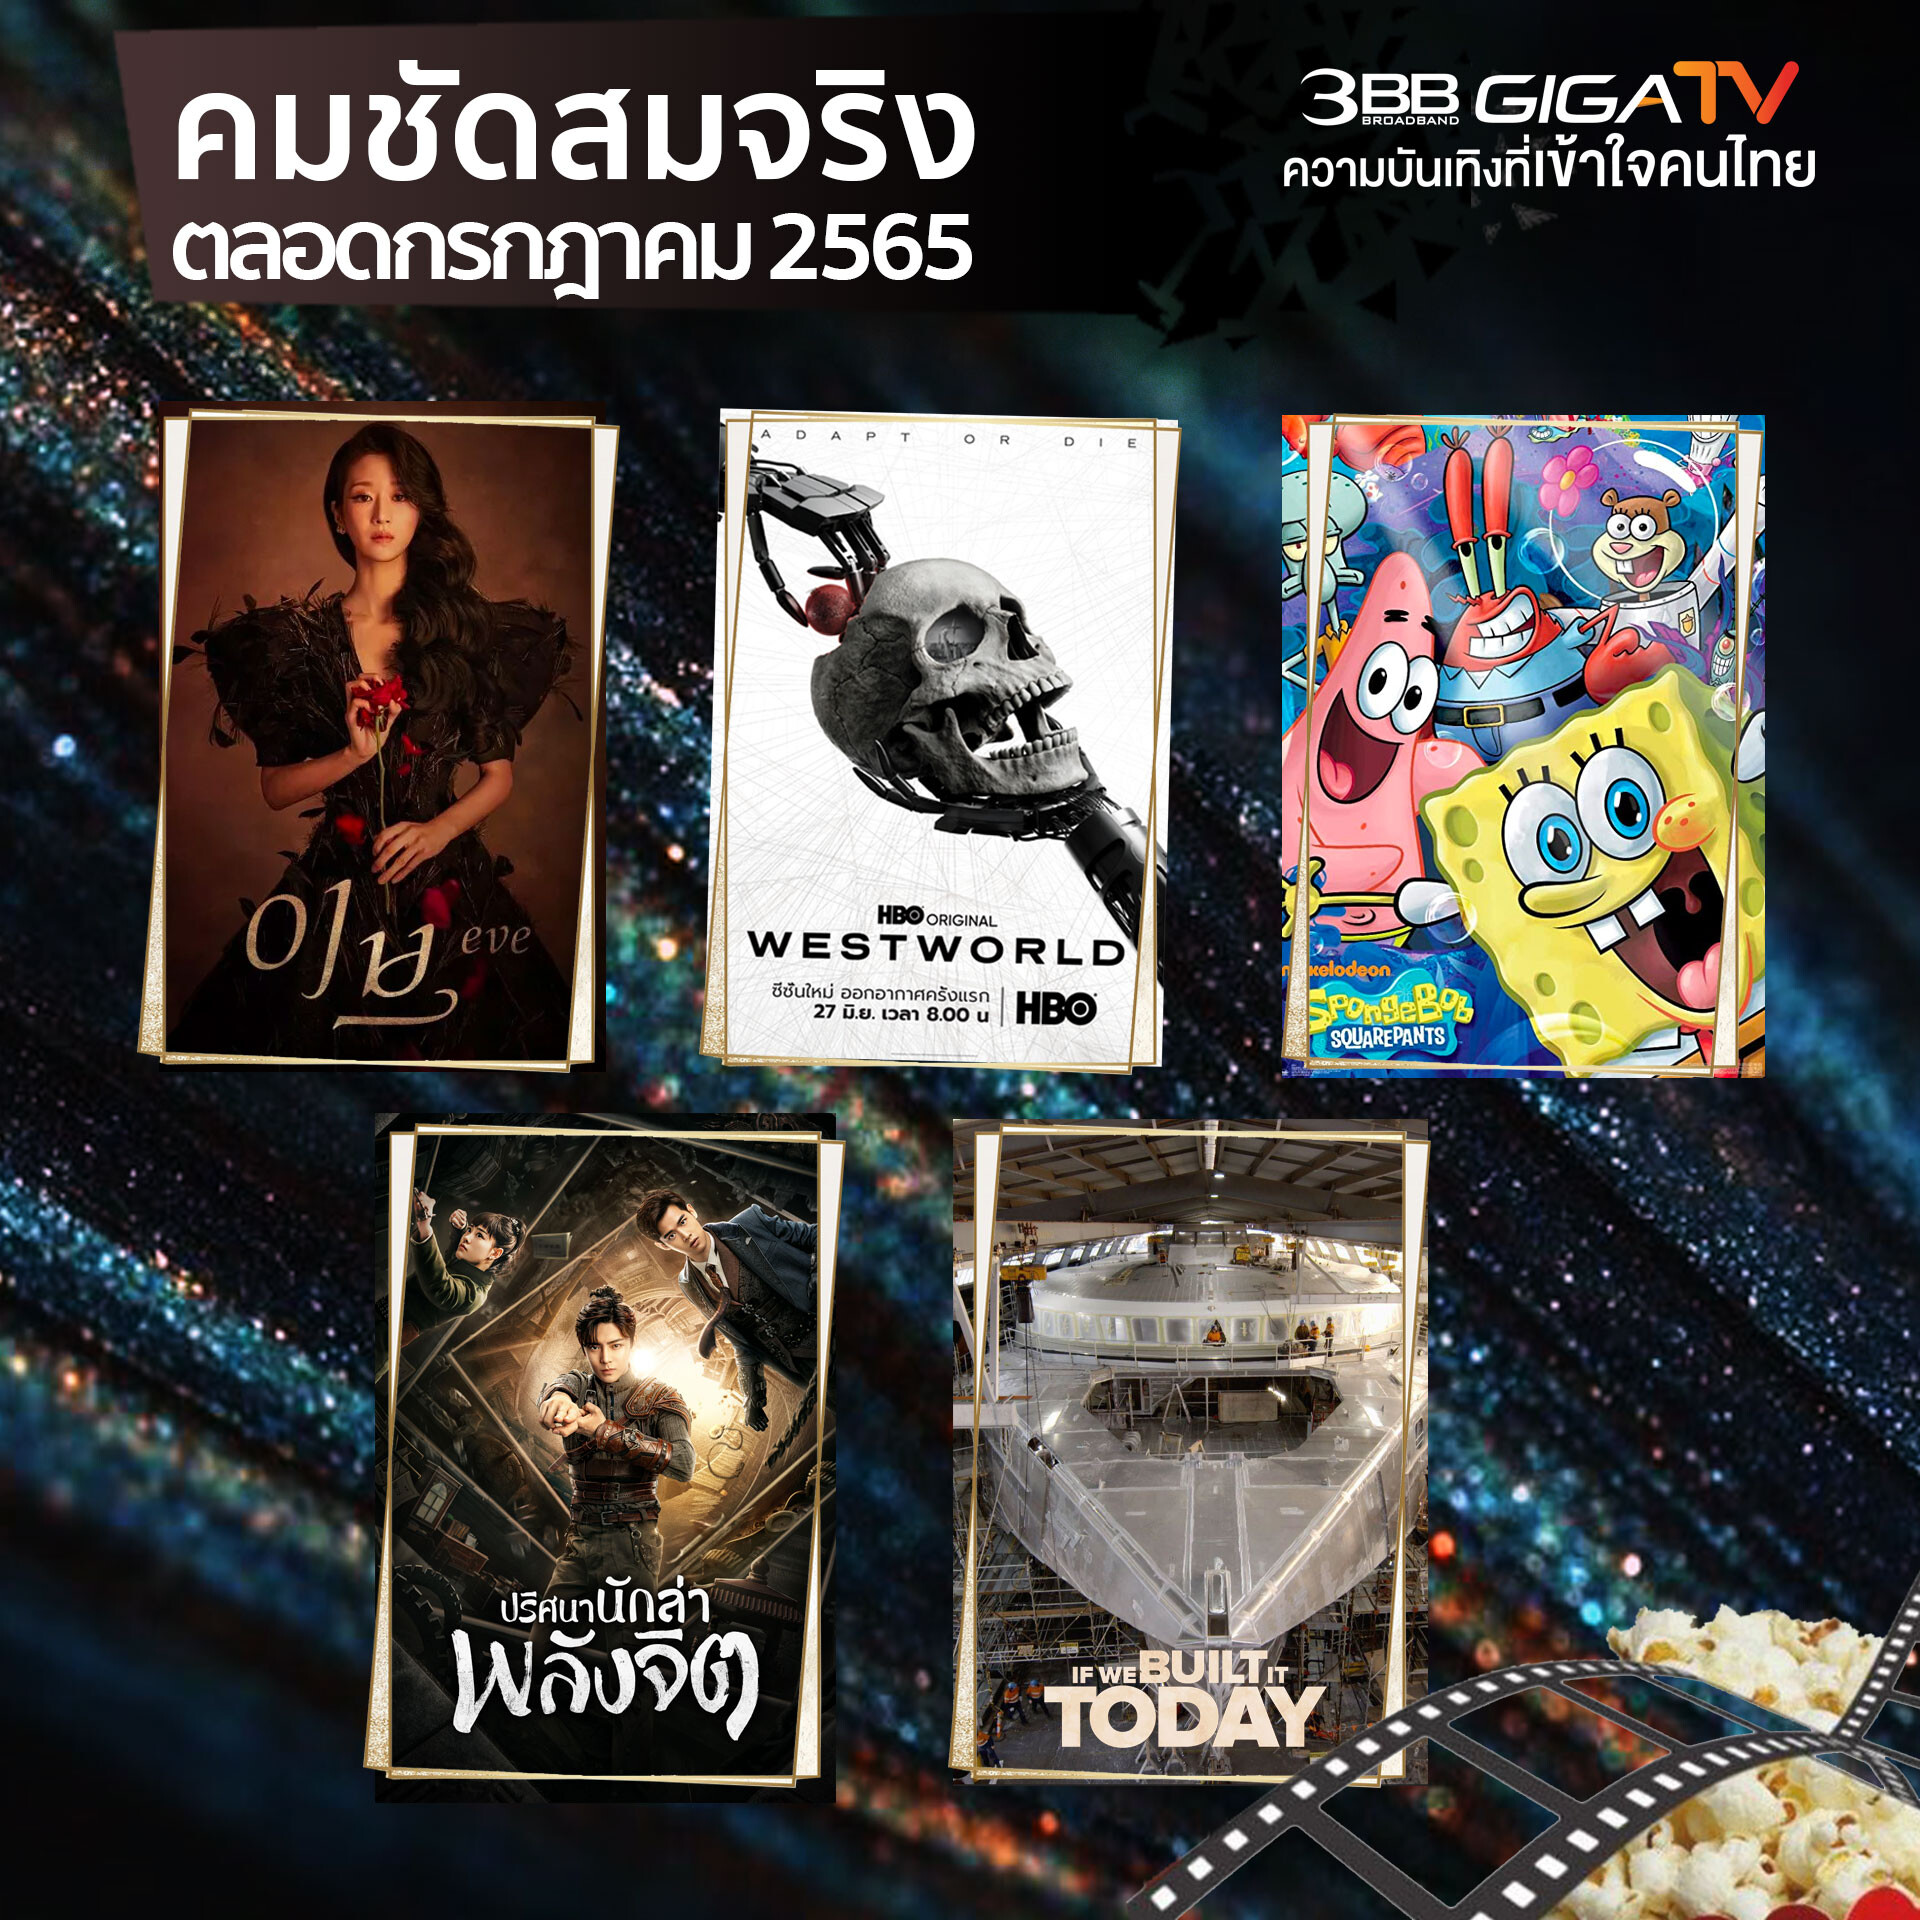 "3BB GIGATV" เสิร์ฟหนัง-ซีรีส์-สารคดี ระดับโลก รับชมคมชัดสมจริงทุกภูมิภาคทั่วไทยตลอดเดือนกรกฎาคมนี้